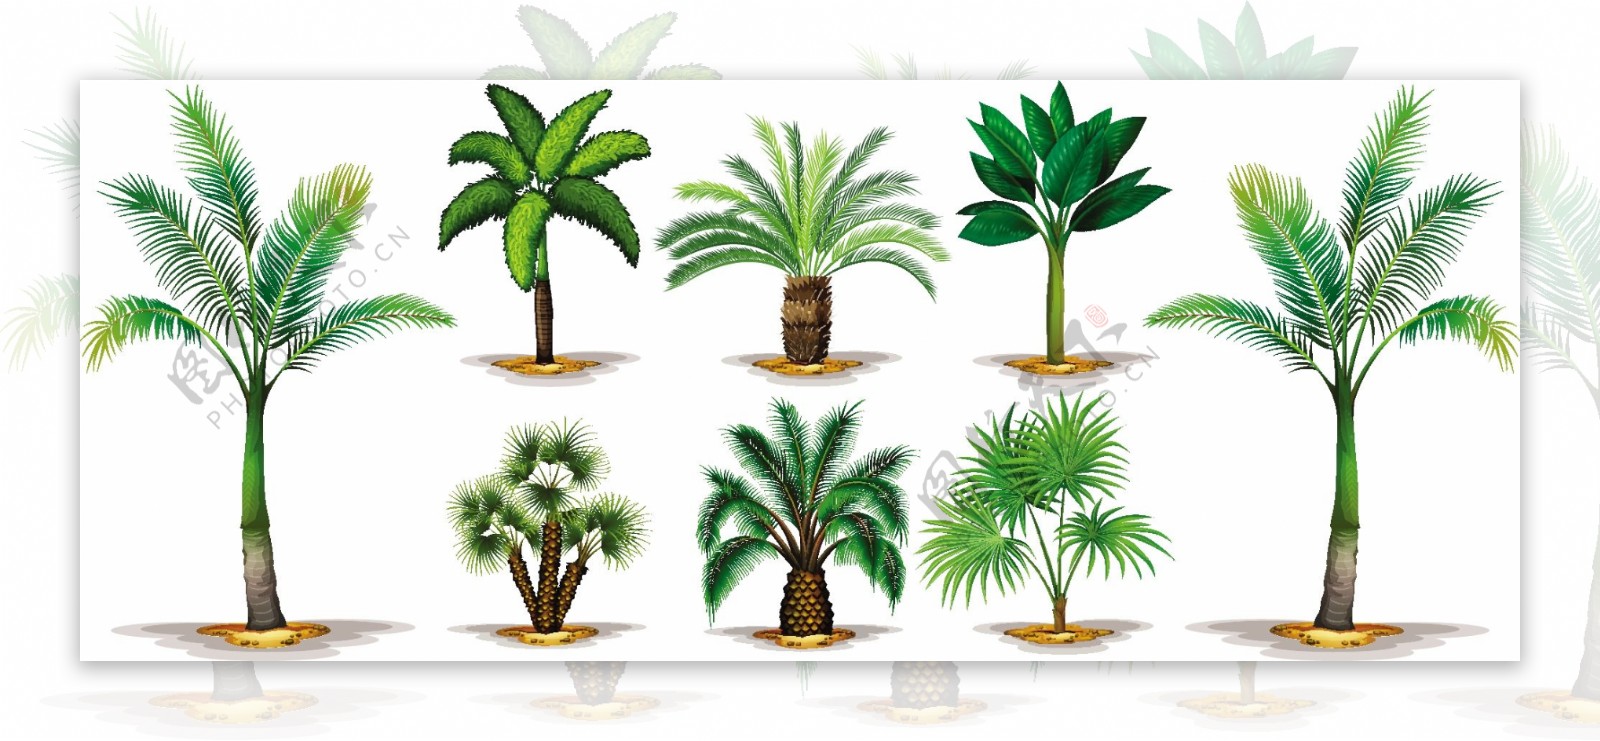 不同类型的棕榈树插图